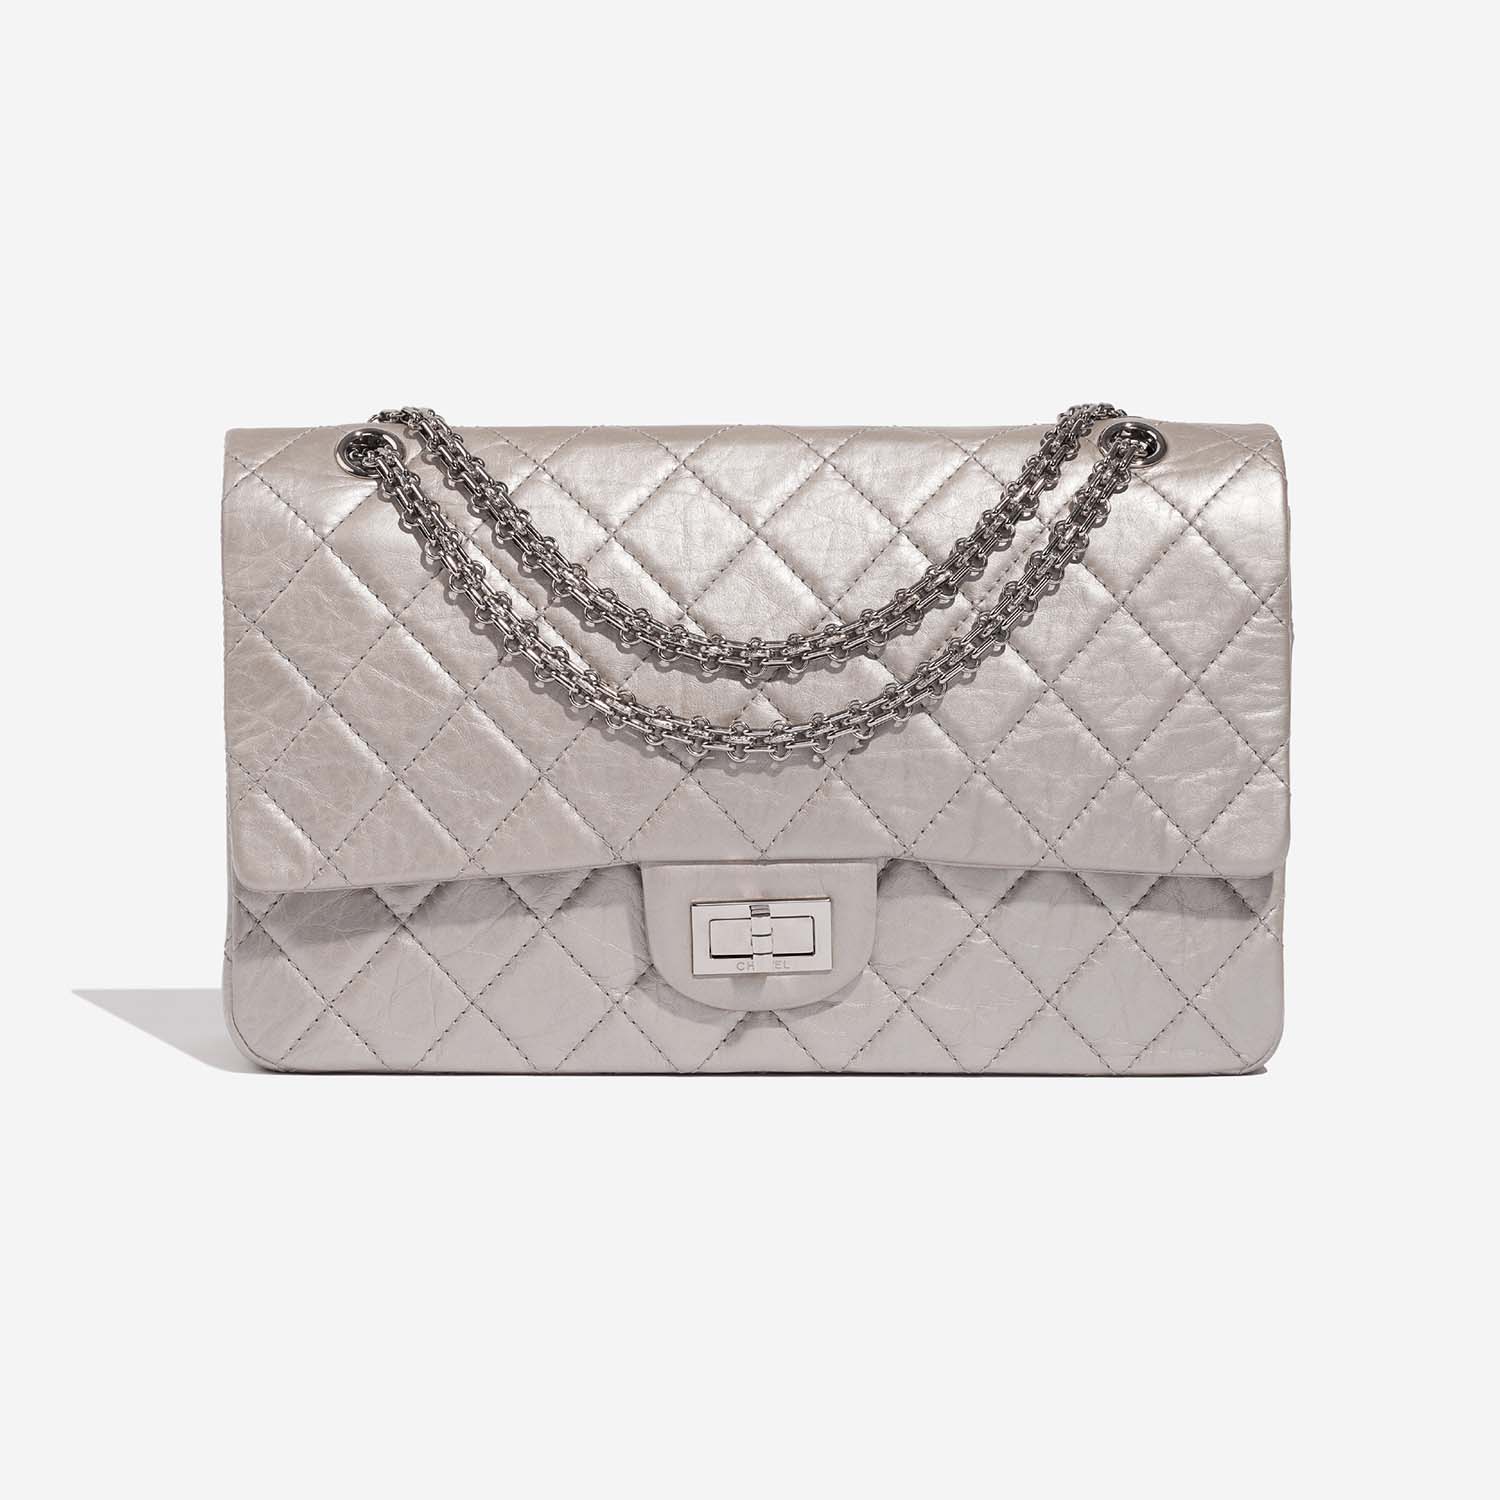 Chanel 255Reissue 227 Silver Front | Verkaufen Sie Ihre Designer-Tasche auf Saclab.com